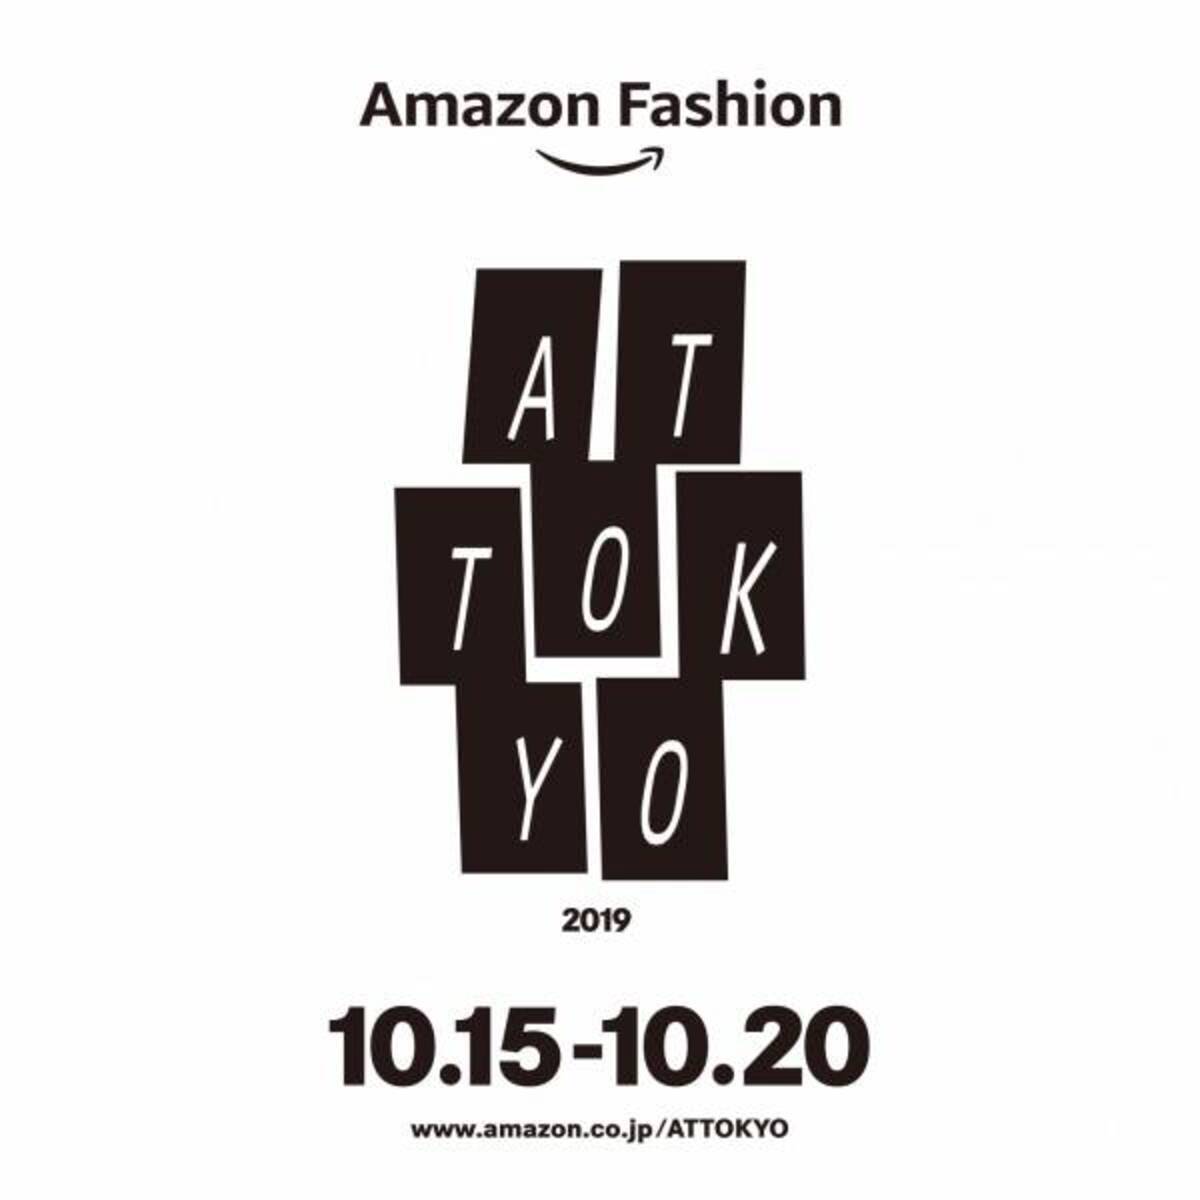 アンリアレイジ 山口一郎nf 鈴木えみラウタシー 落合陽一などアマゾン ファッション ウィーク東京 At Tokyo で6ブランドのショーが発表に 18年9月11日 ウーマンエキサイト 1 2